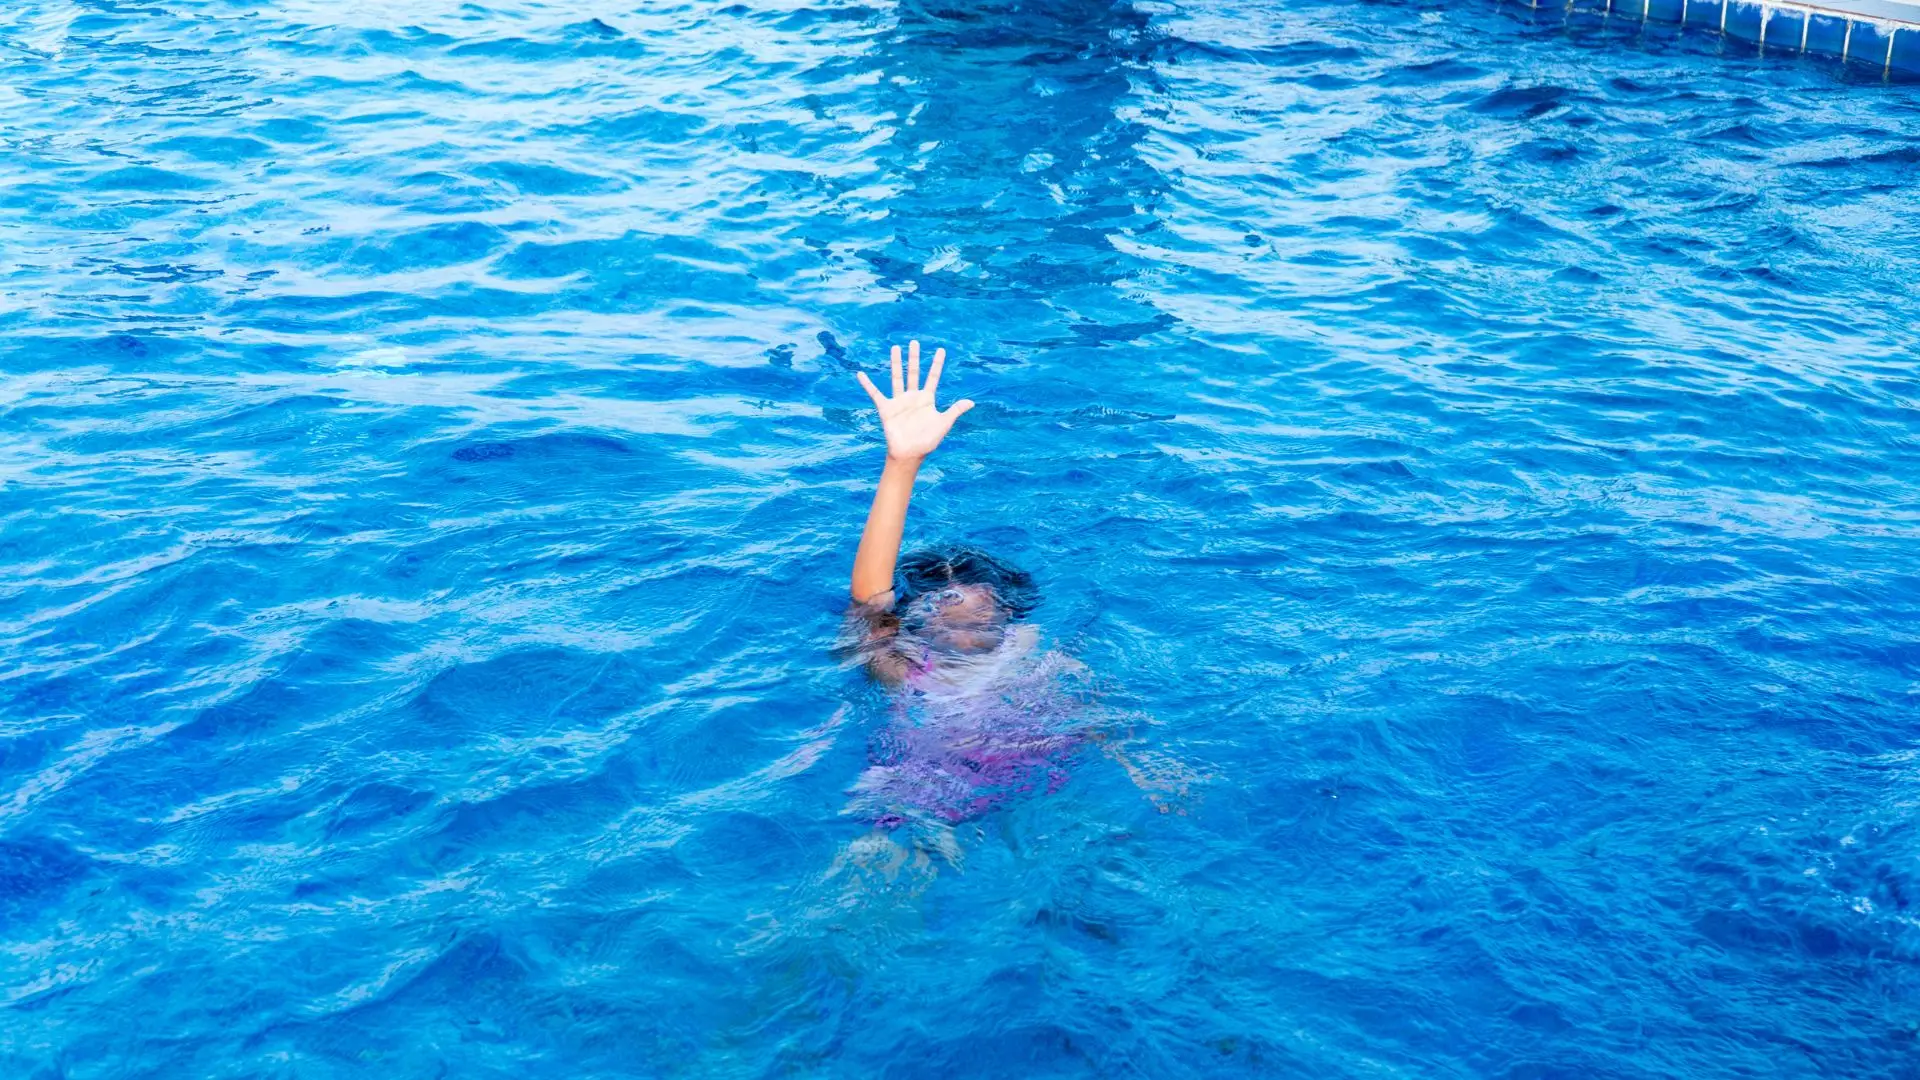 Afogamentos de crianças em piscinas: associações querem tornar obrigatório sistemas de proteção